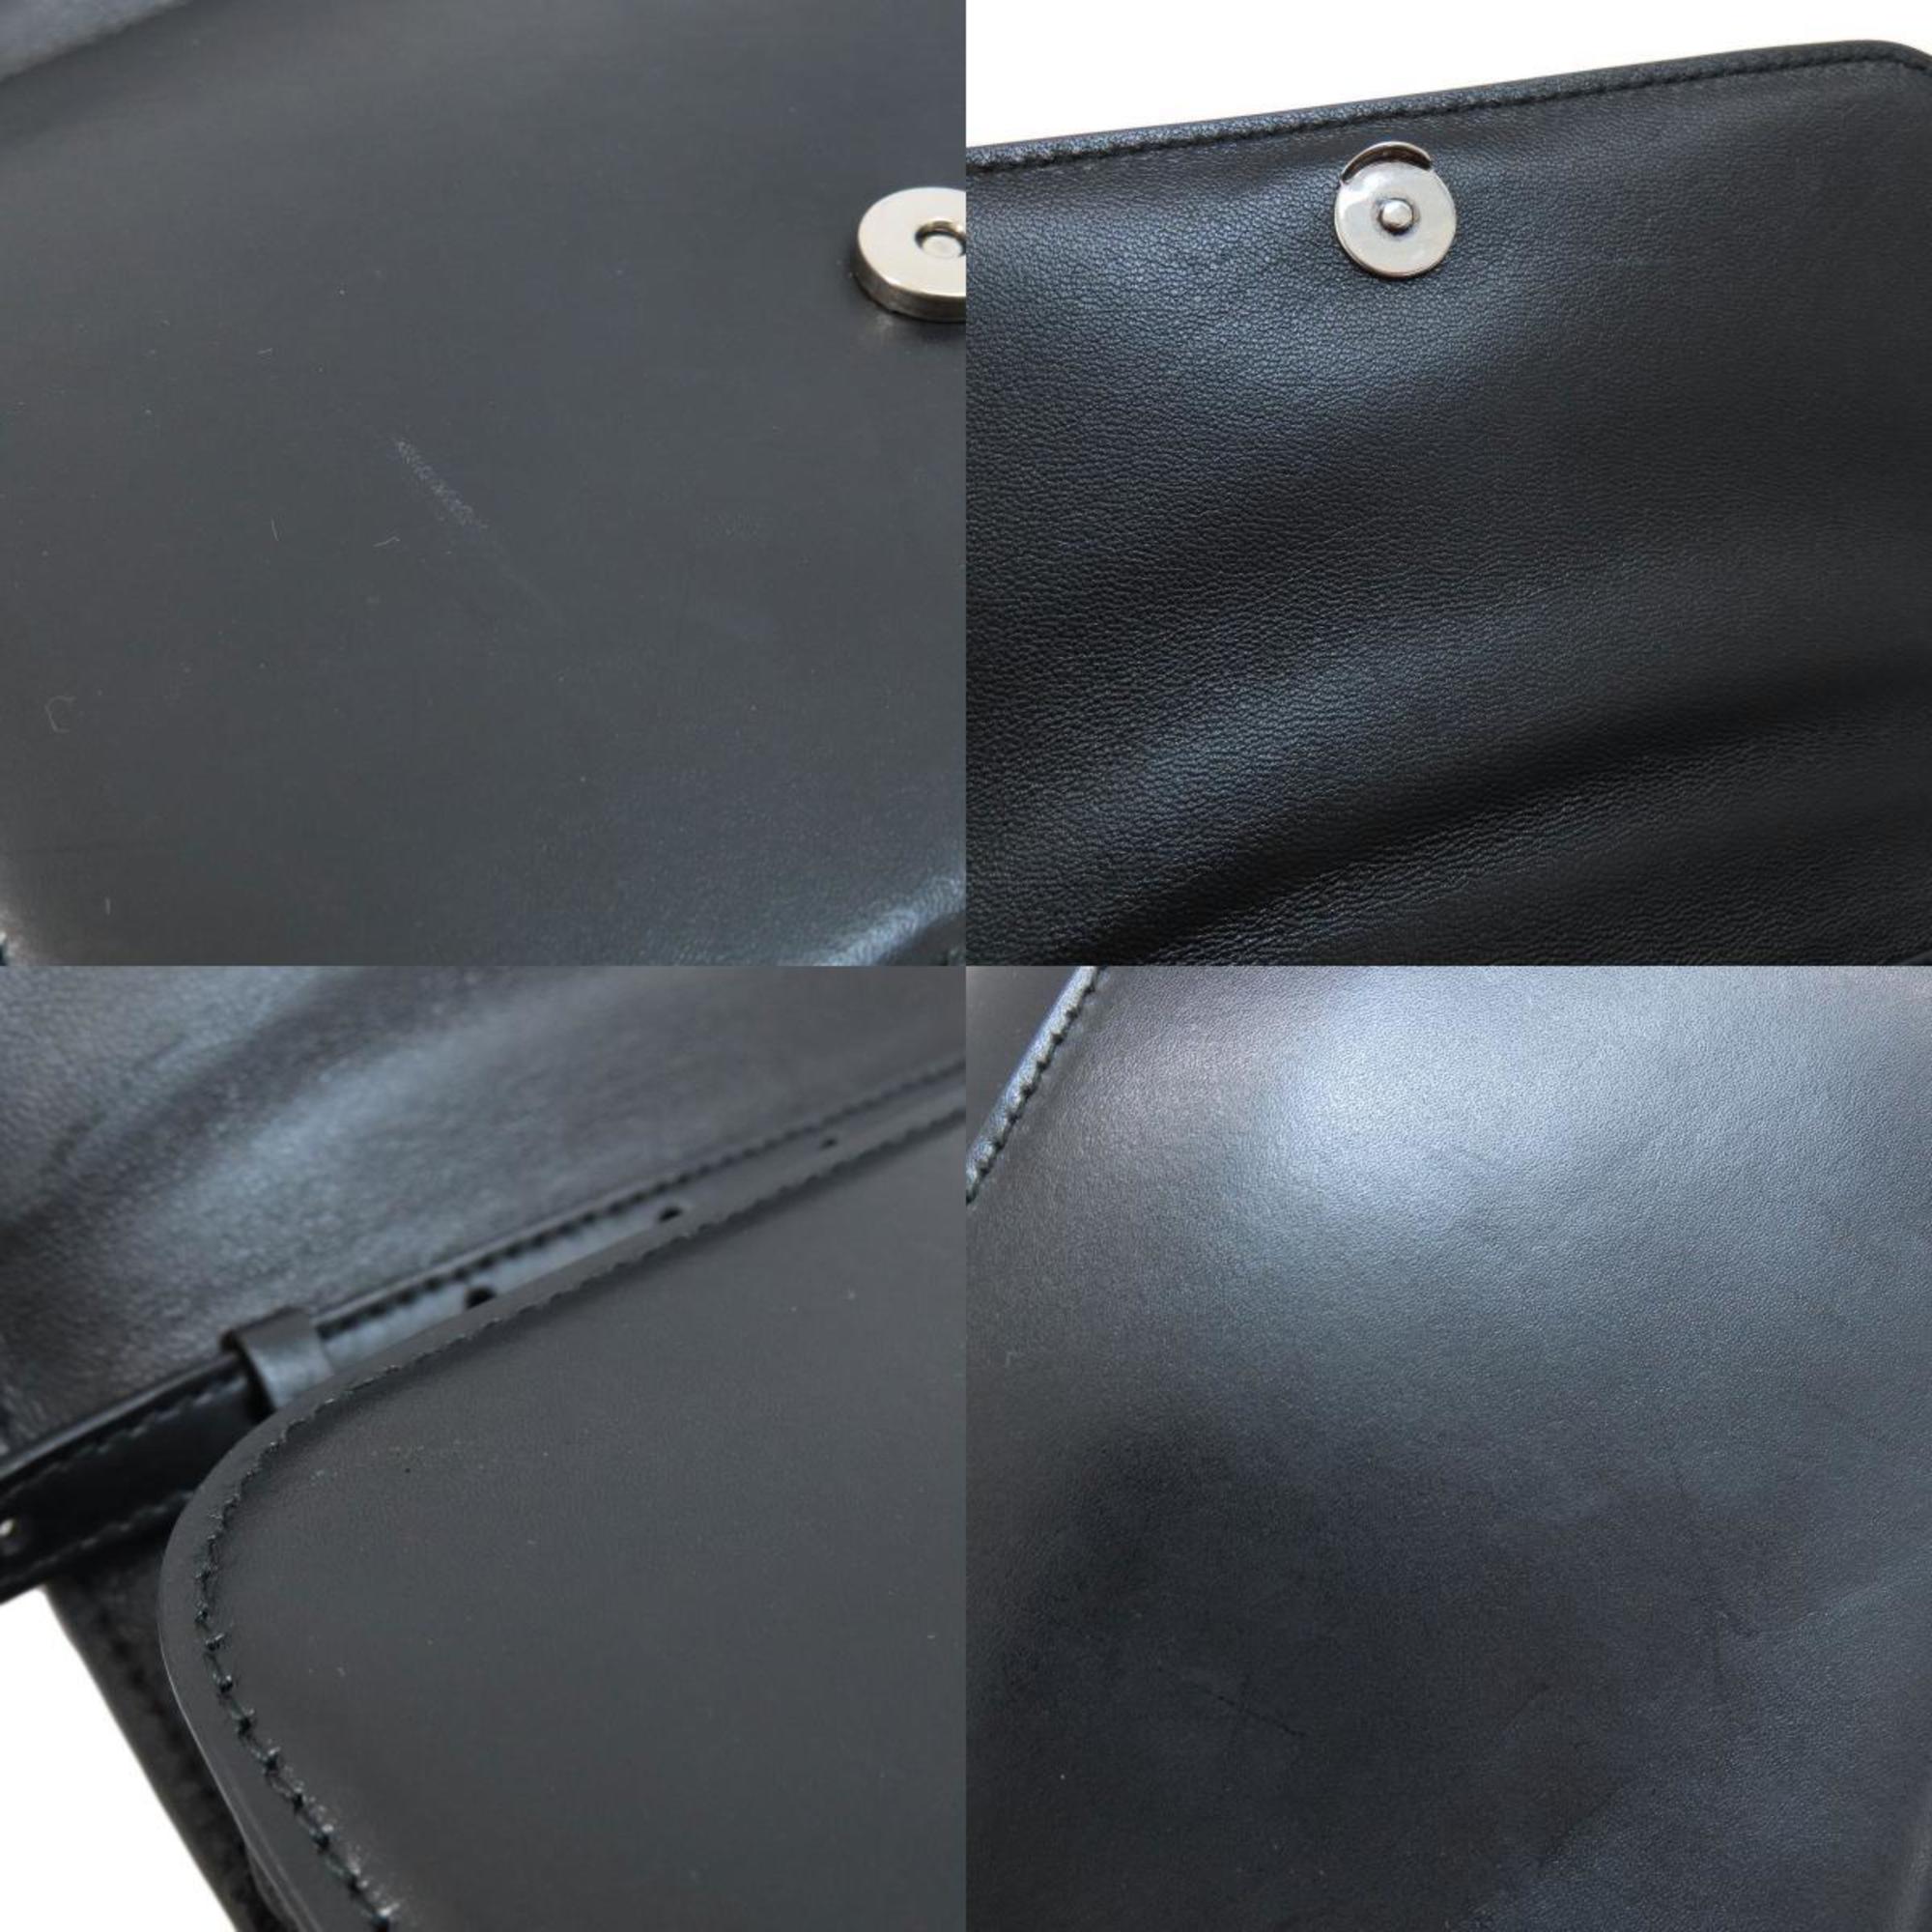 BALENCIAGA 592898 B Shoulder Bag Calf Leather Women's